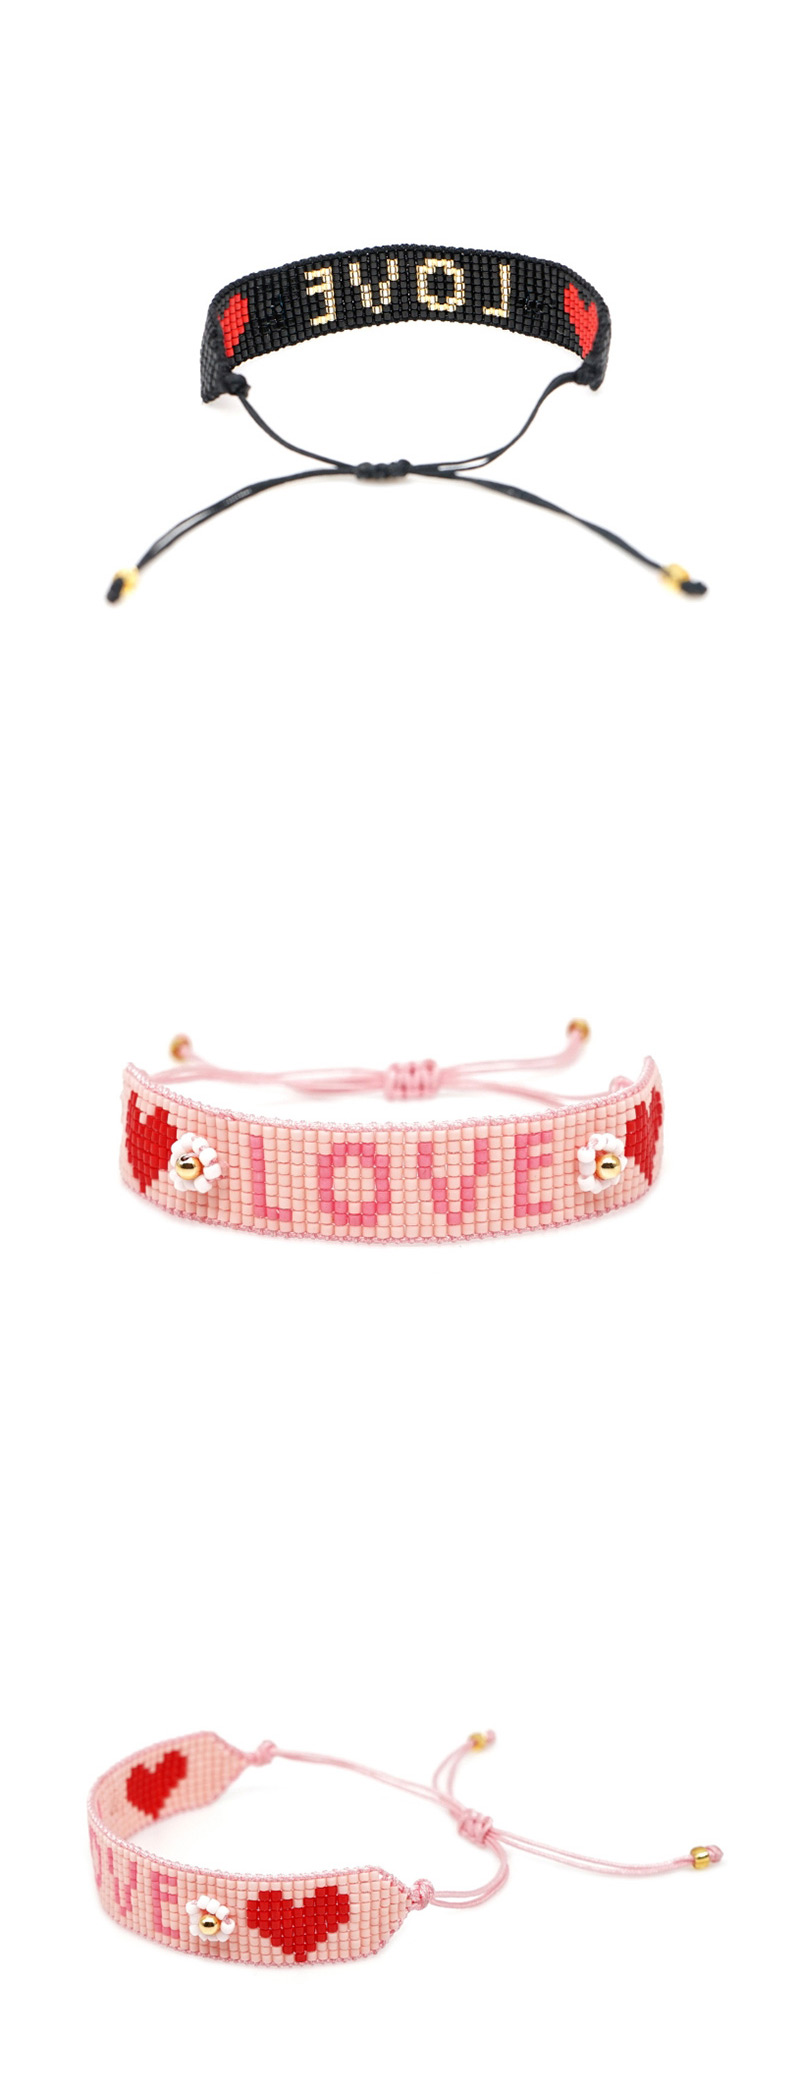  Red Rice Beads Woven Letters Love Bracelet,Beaded Bracelet